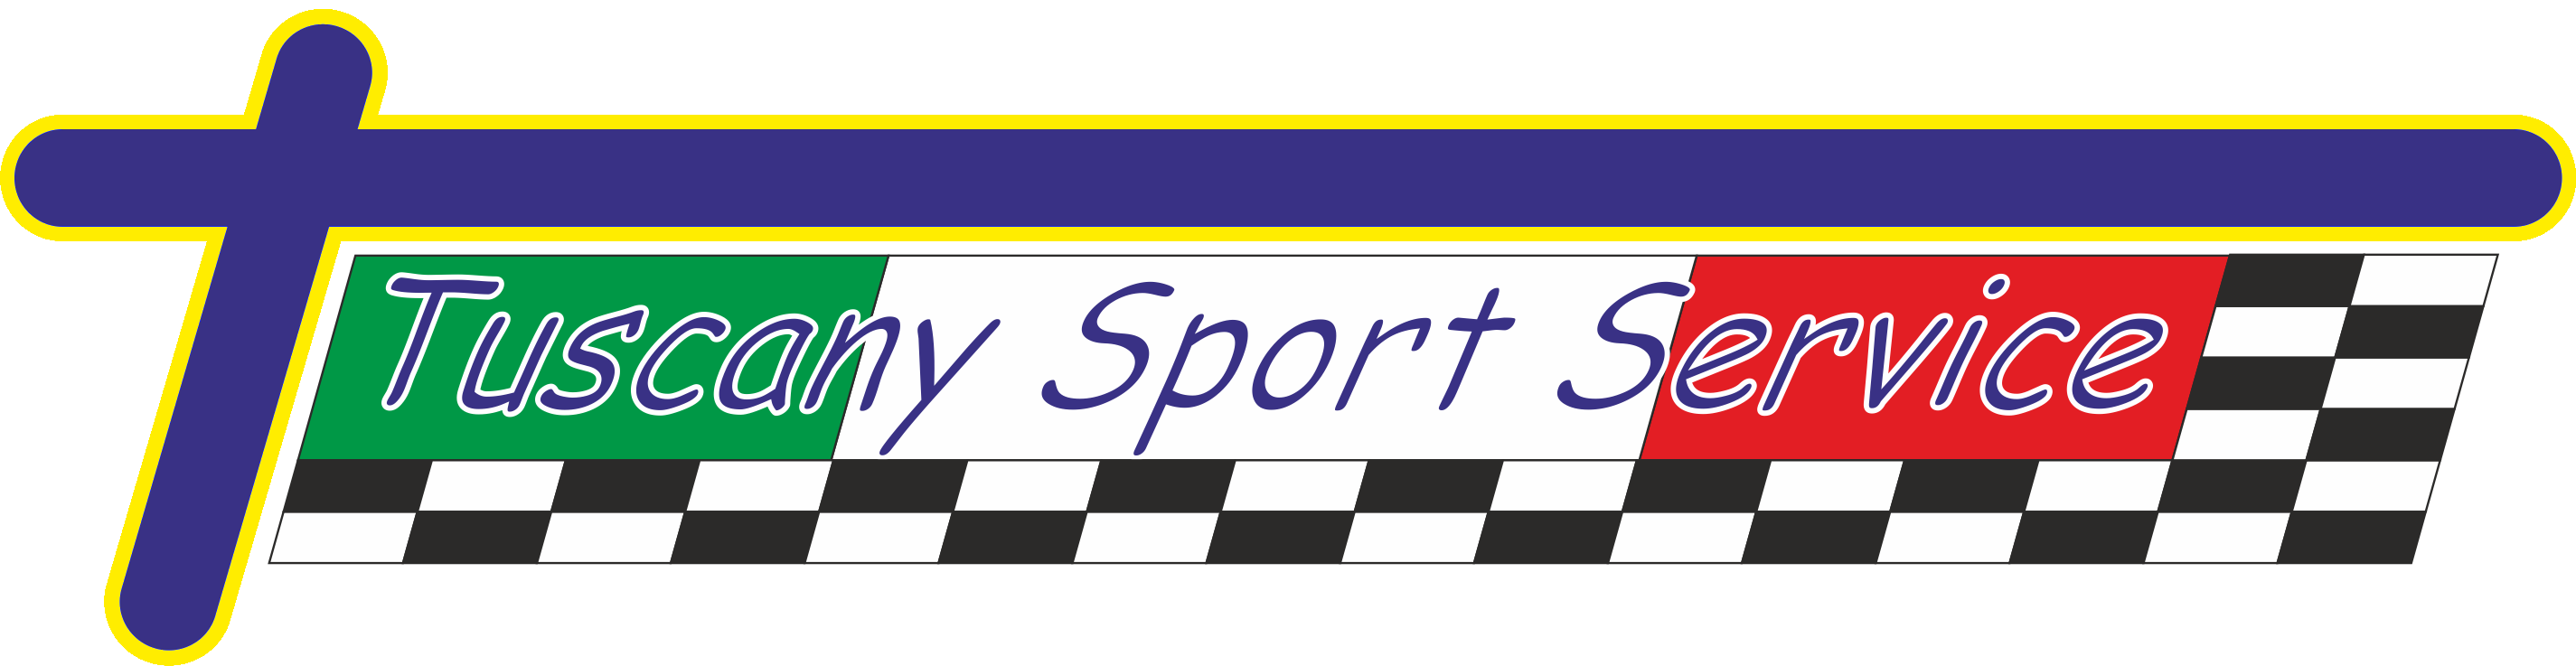 Tuscany Sport Service ASD - Organizzazione eventi sportivi motoristici ad Arezzo